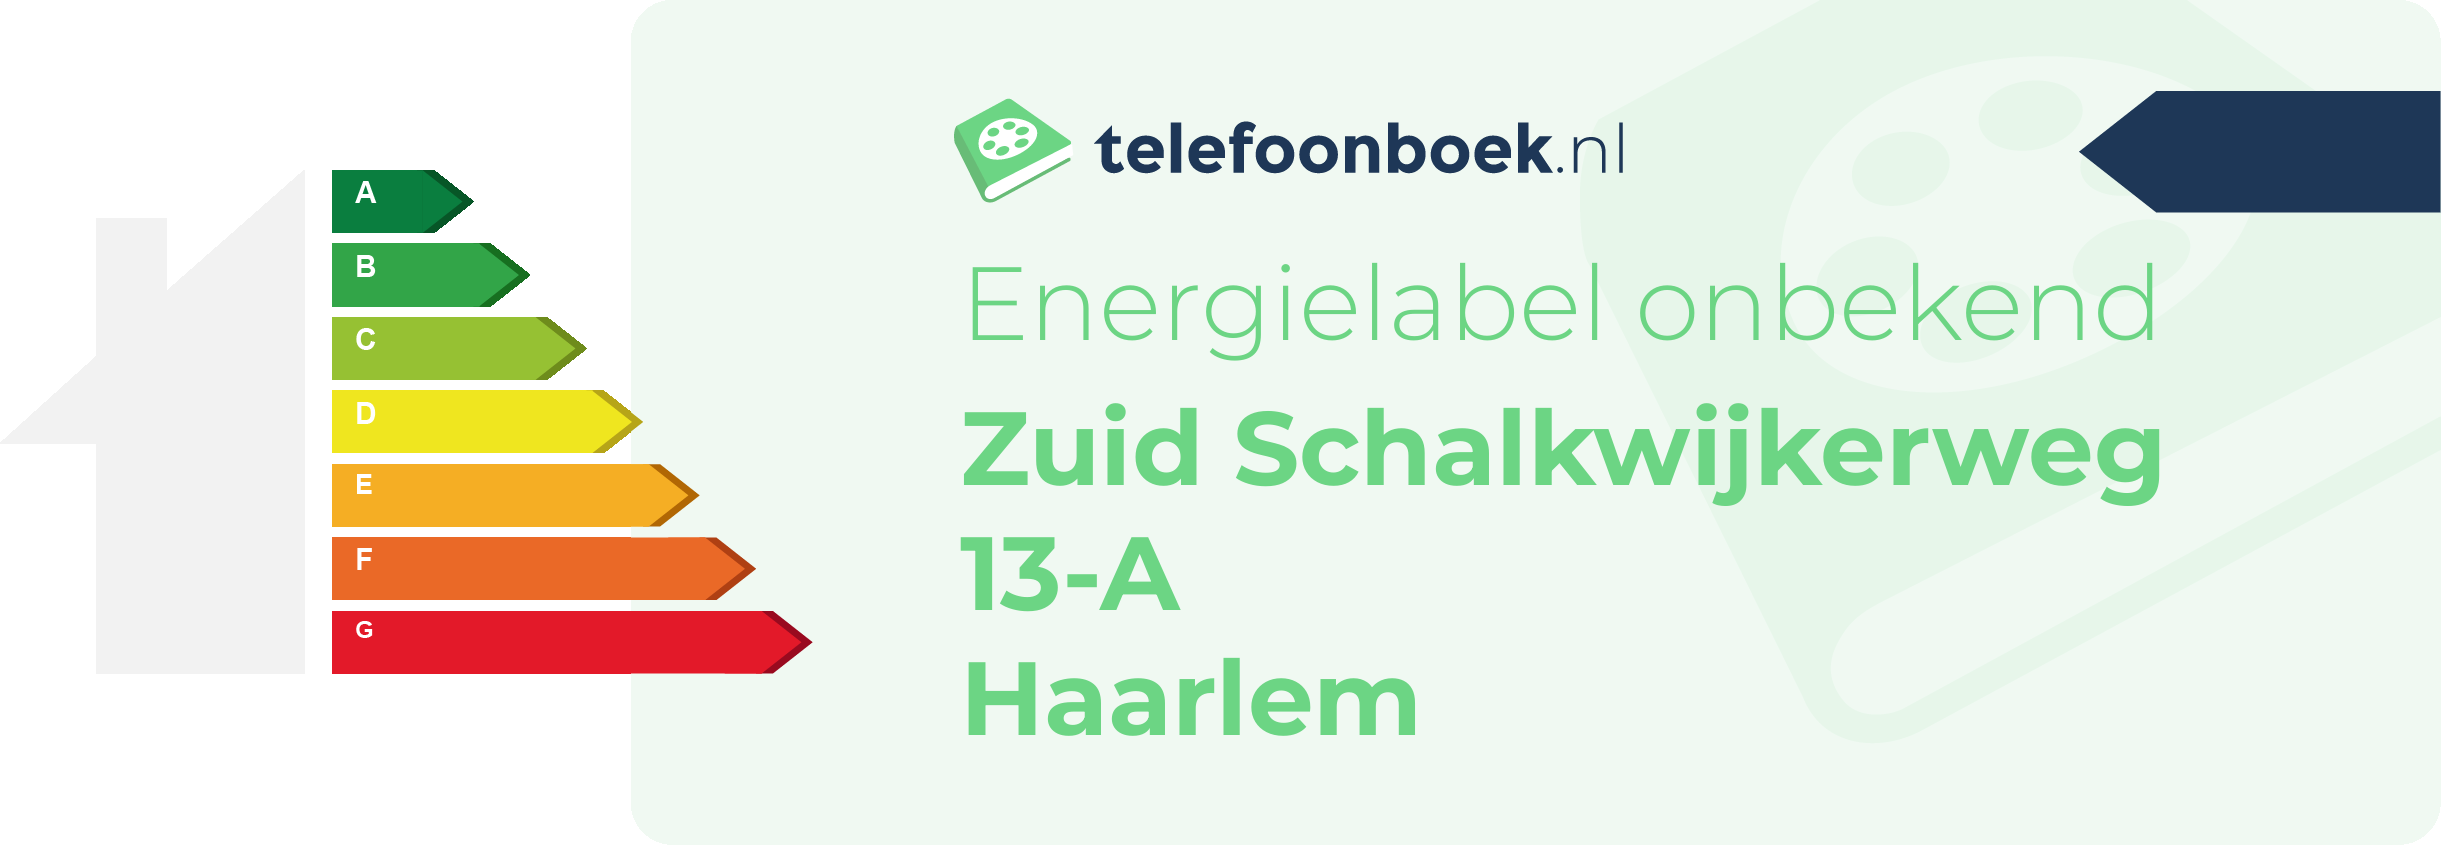 Energielabel Zuid Schalkwijkerweg 13-A Haarlem